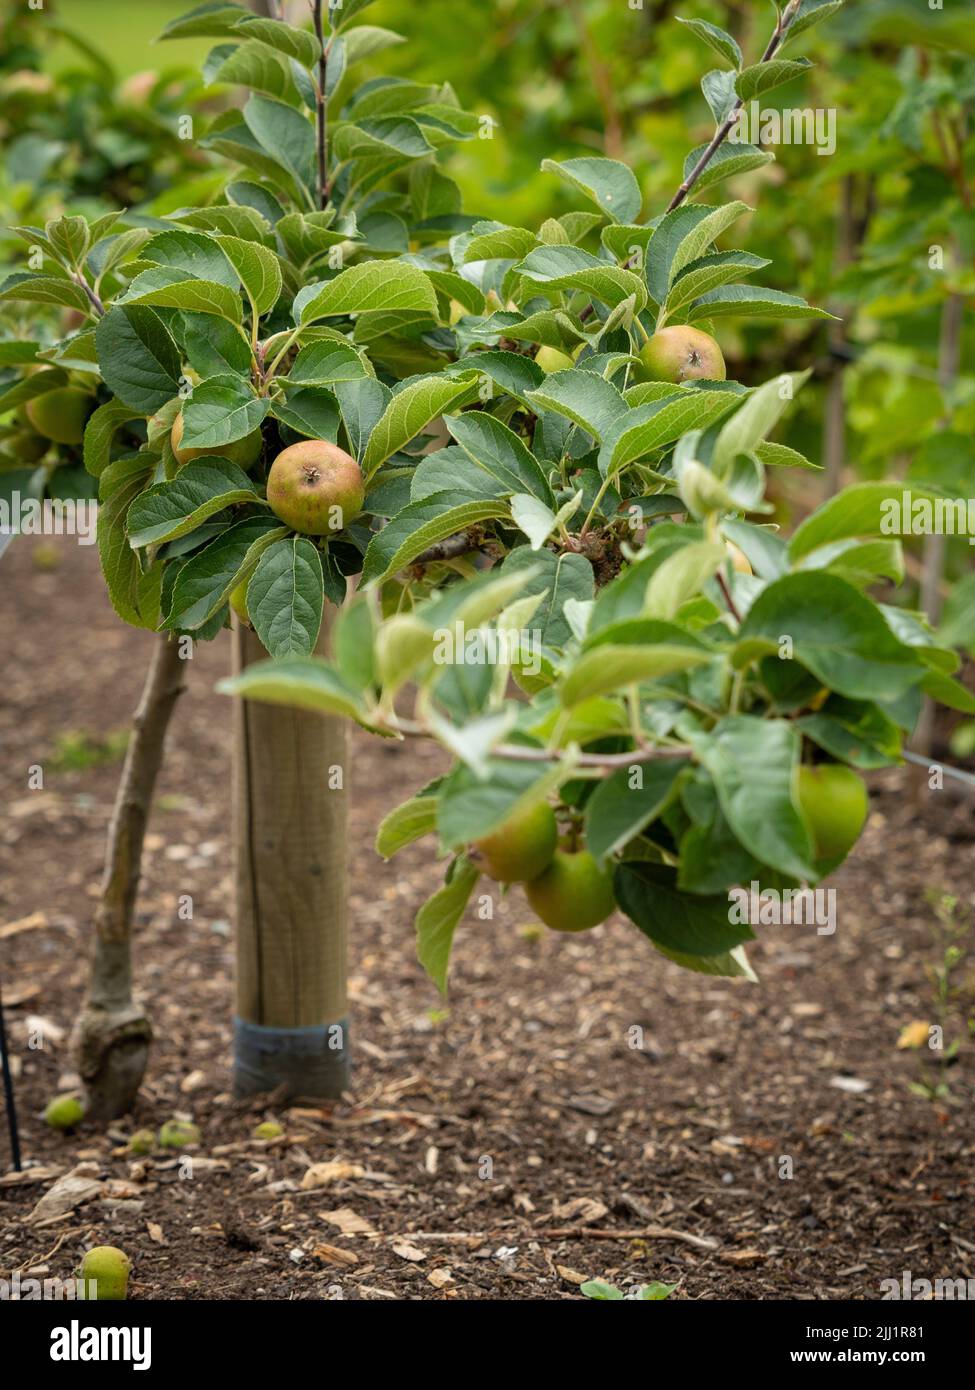 El cordón horizontal entrenó a los manzanos, comúnmente llamados manzanas de estofado, que crecen en un jardín del Reino Unido Foto de stock